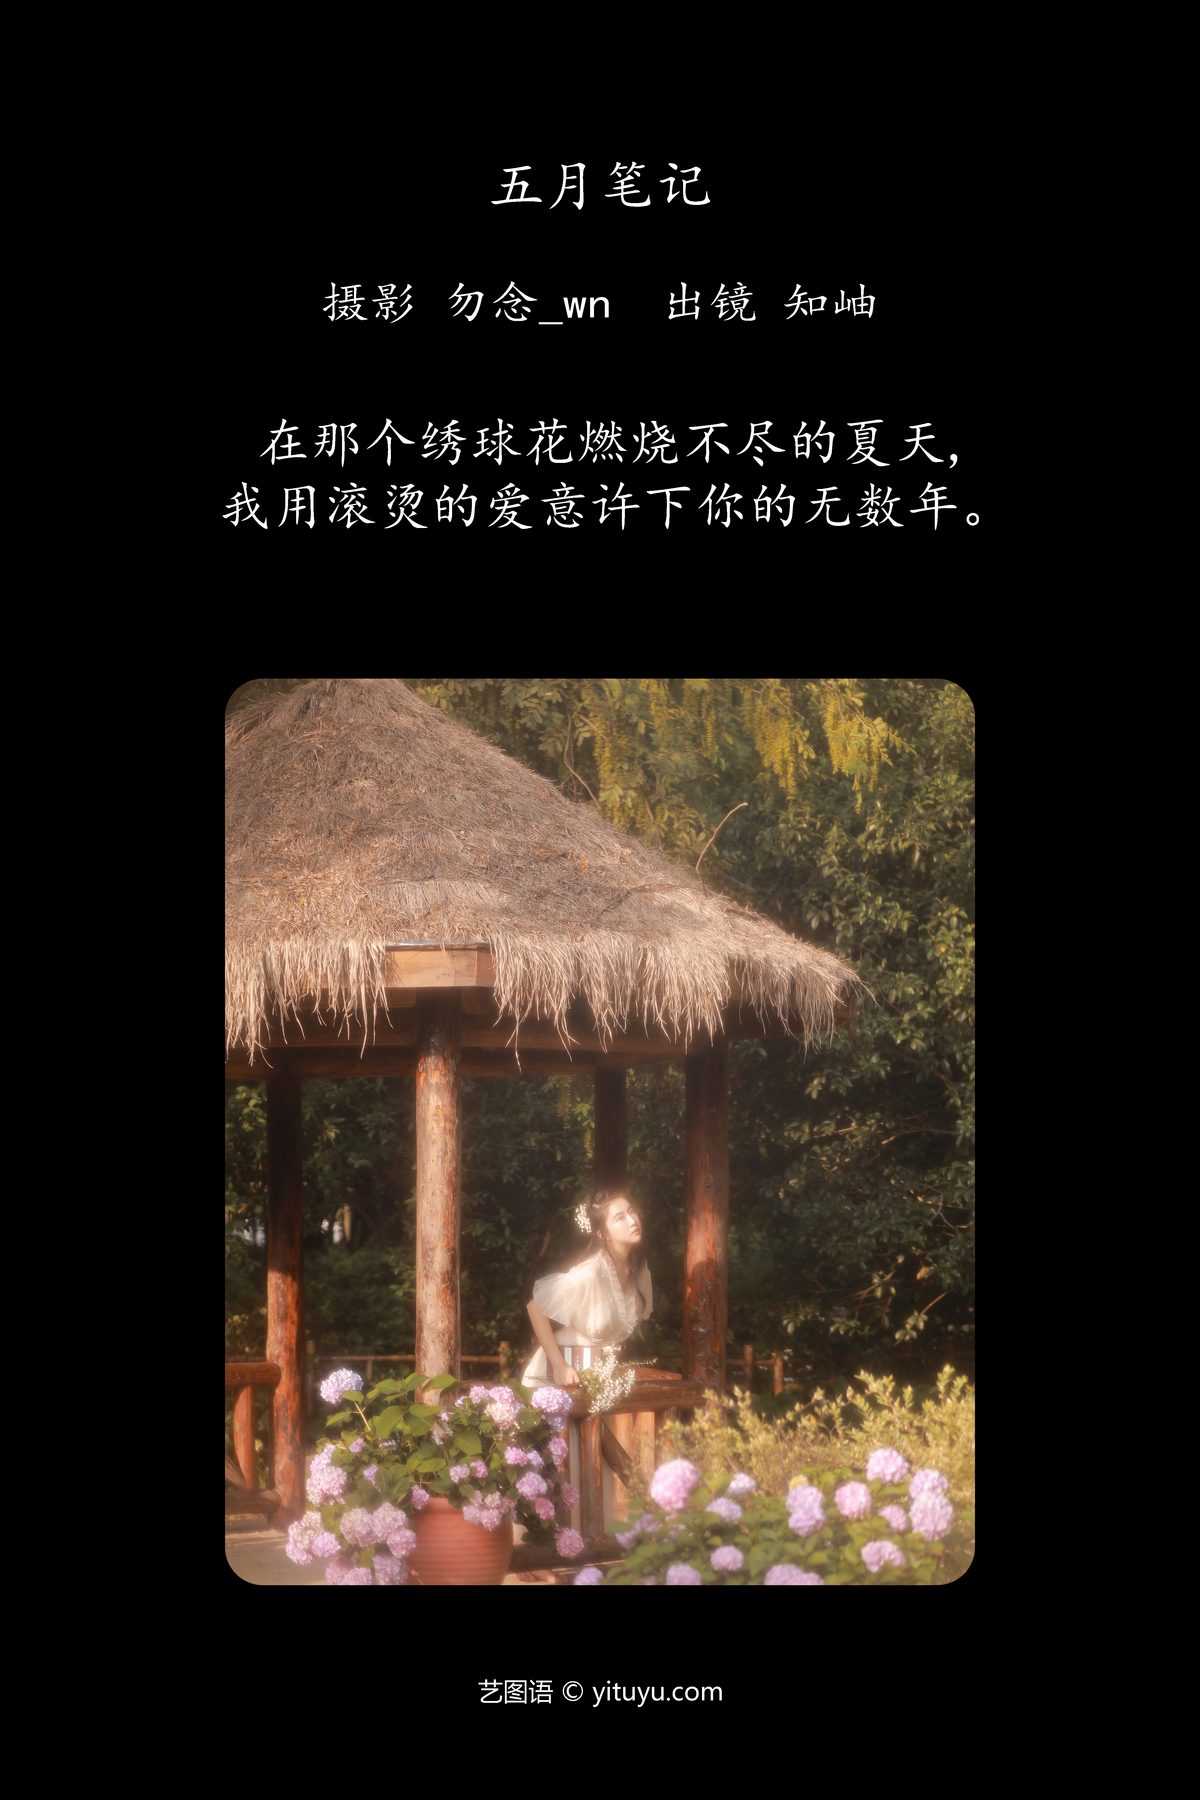 YiTuYu艺图语 Vol 4747 Zhi Xiu 0002 4847295806.jpg